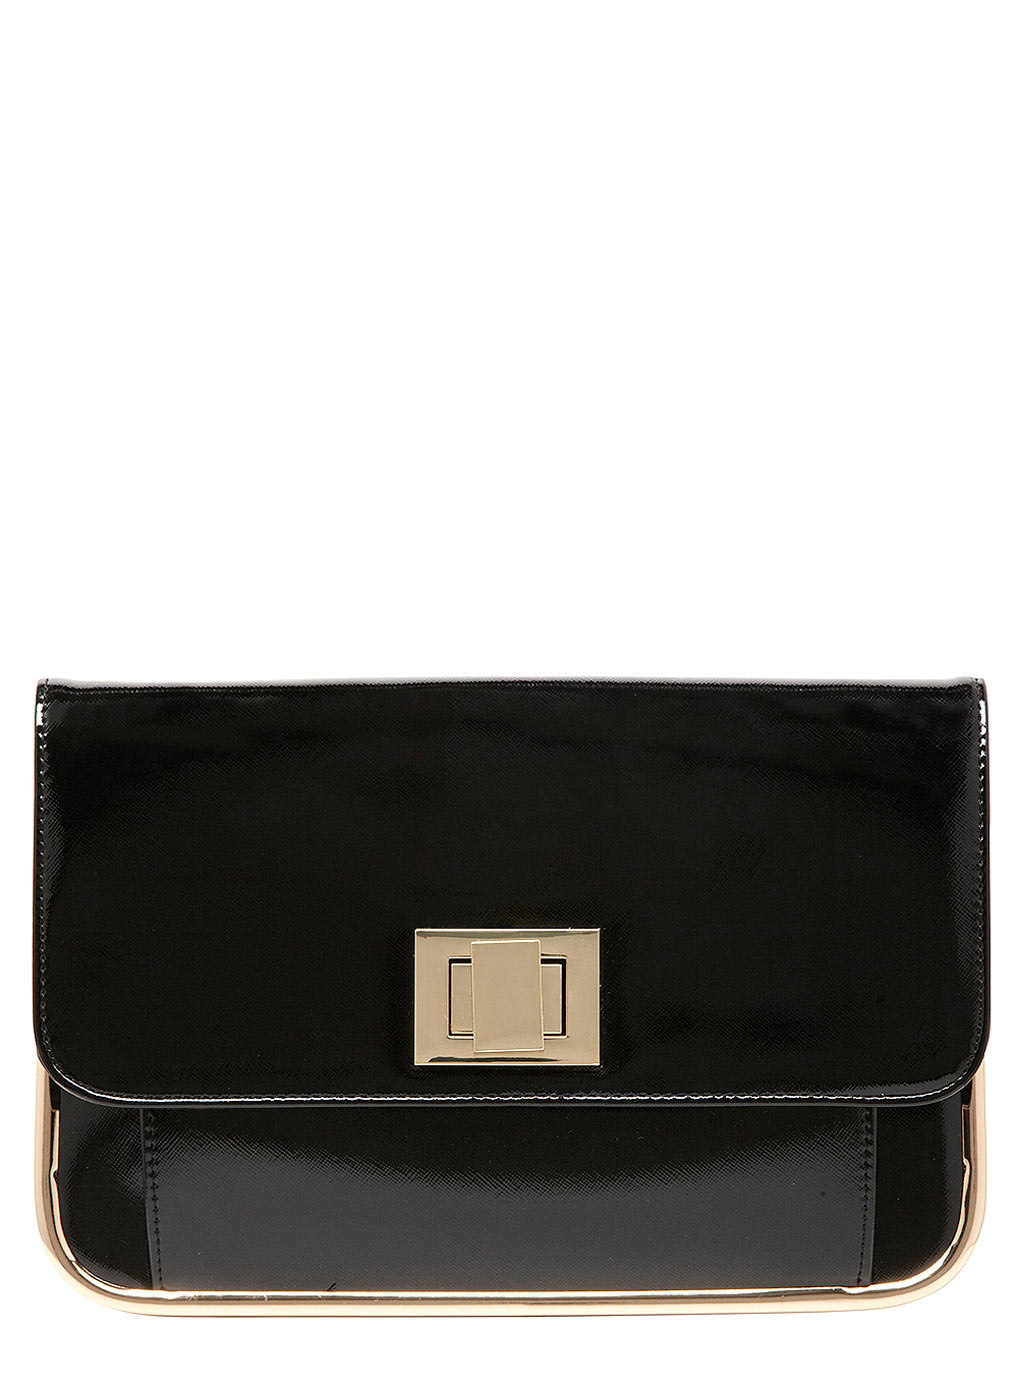 Dorothy Perkins Juno black bar edge clutch bag 18365410